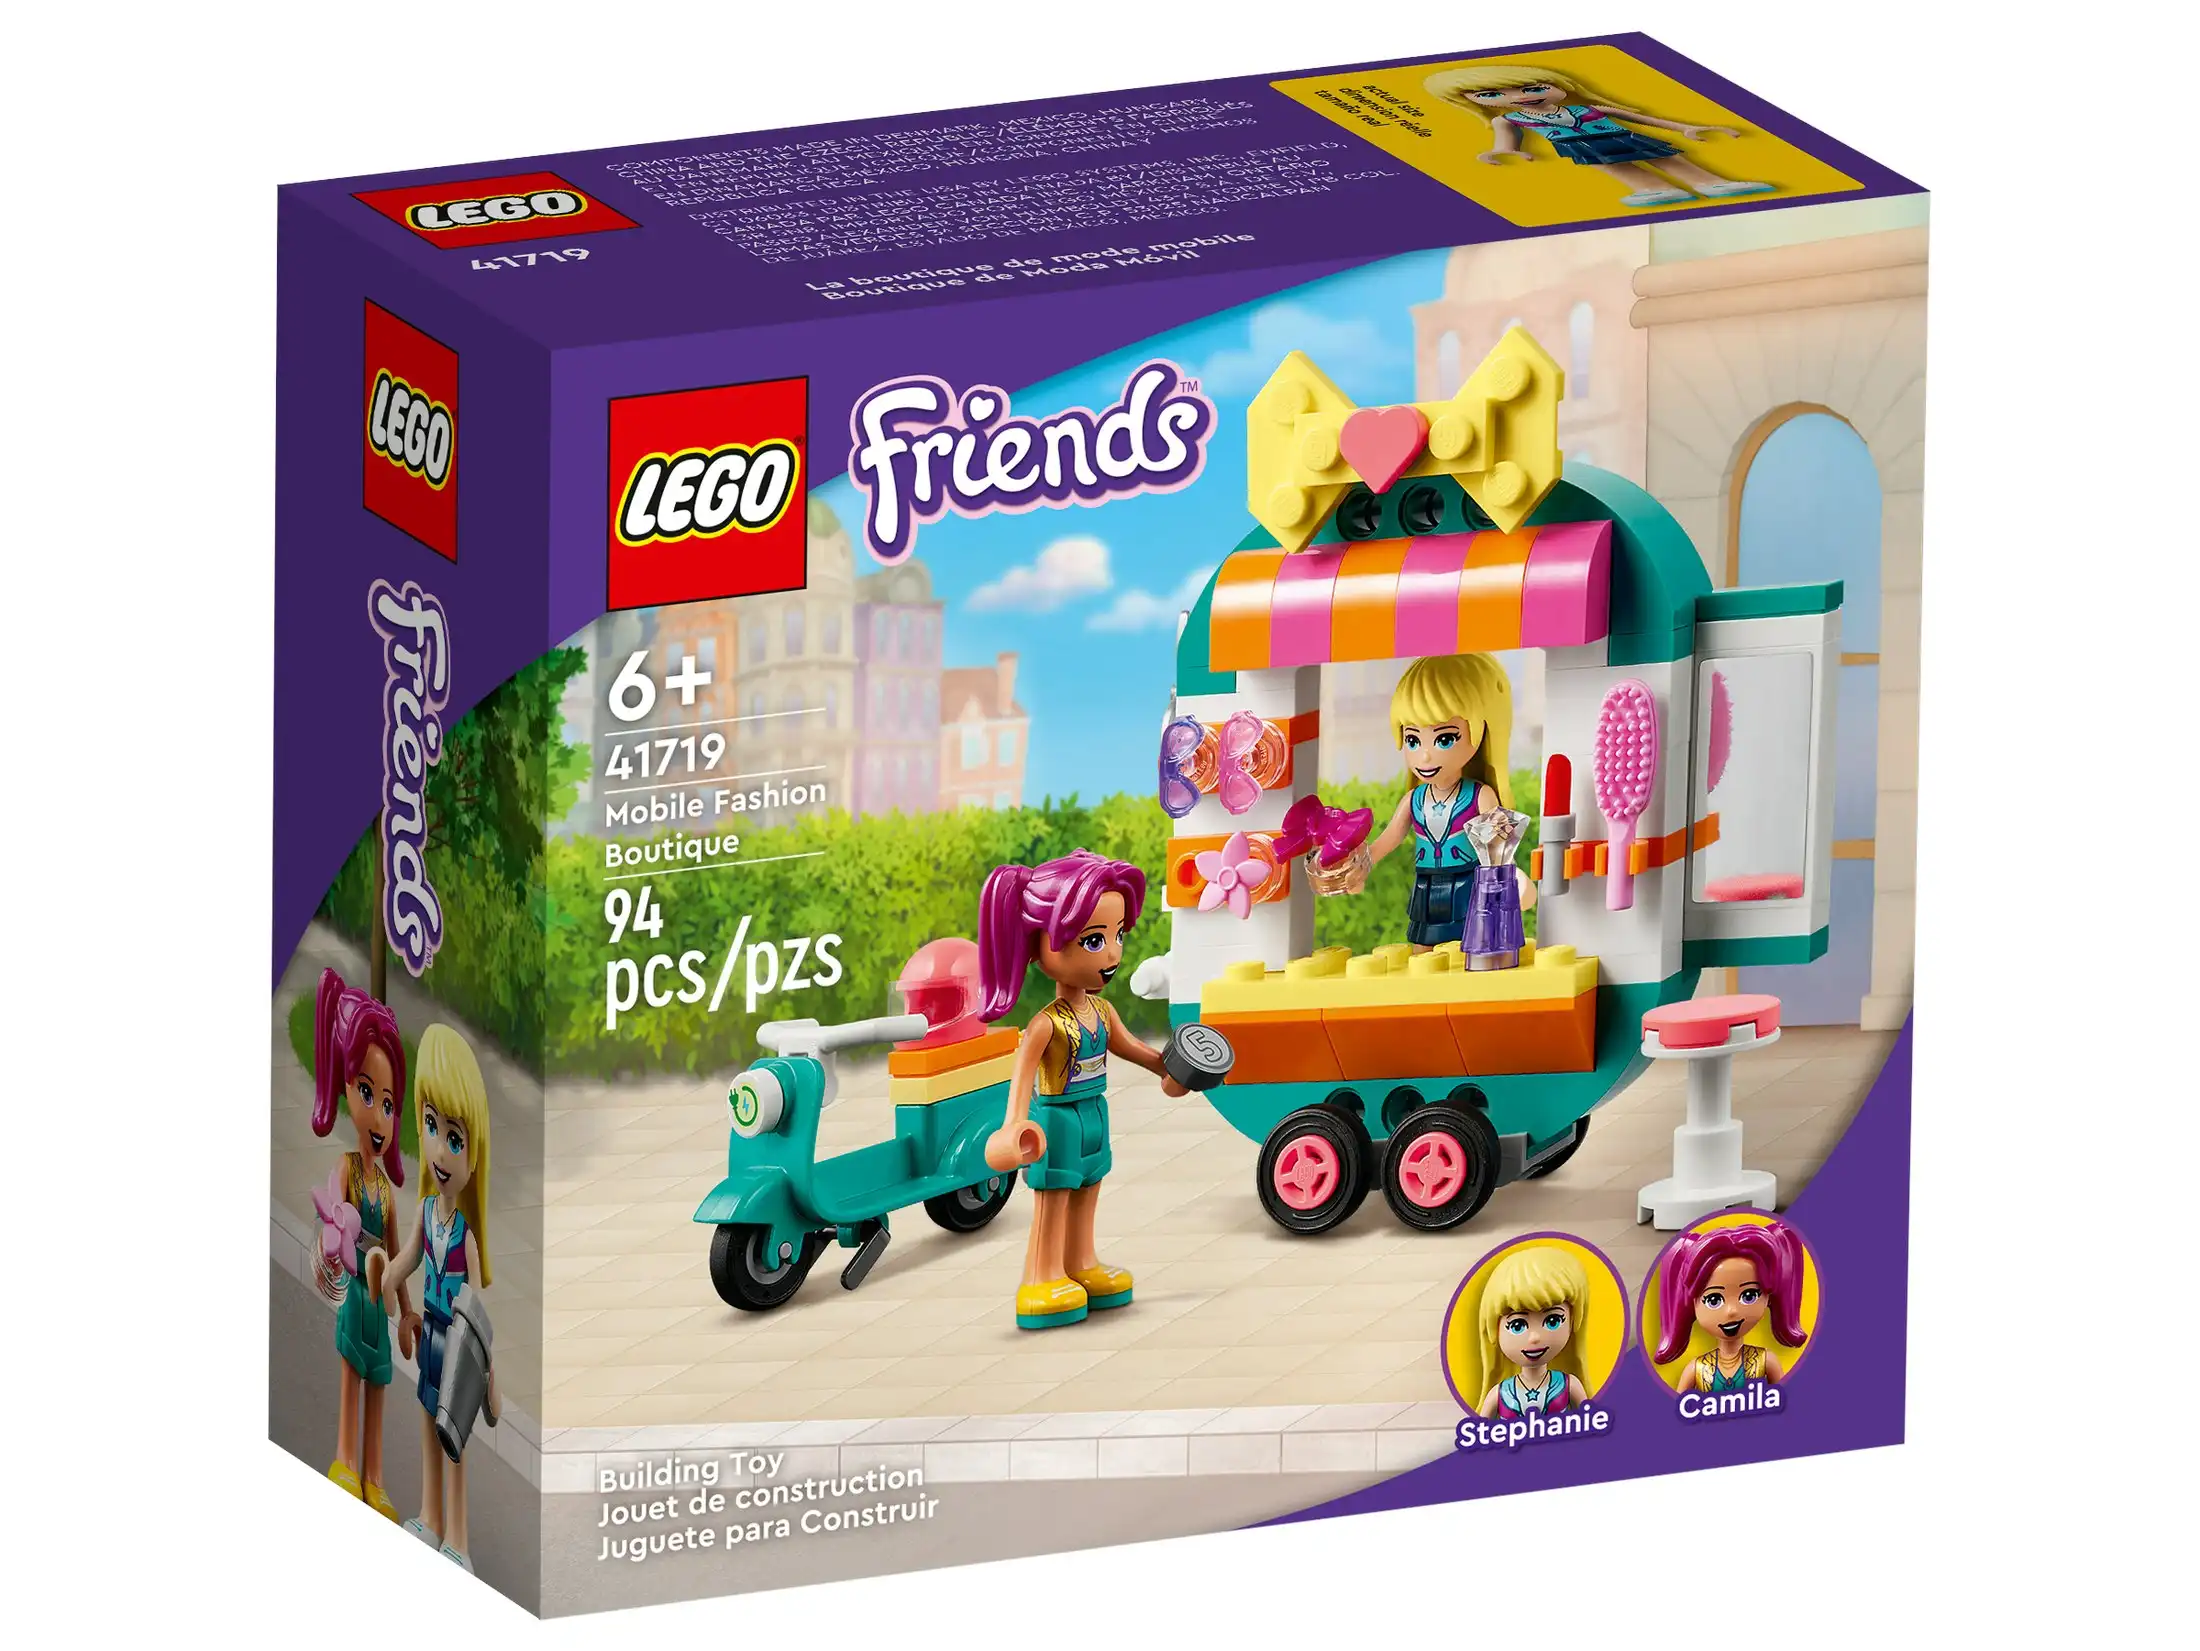 LEGO 41719 Mobile Fashion Boutique - Friends